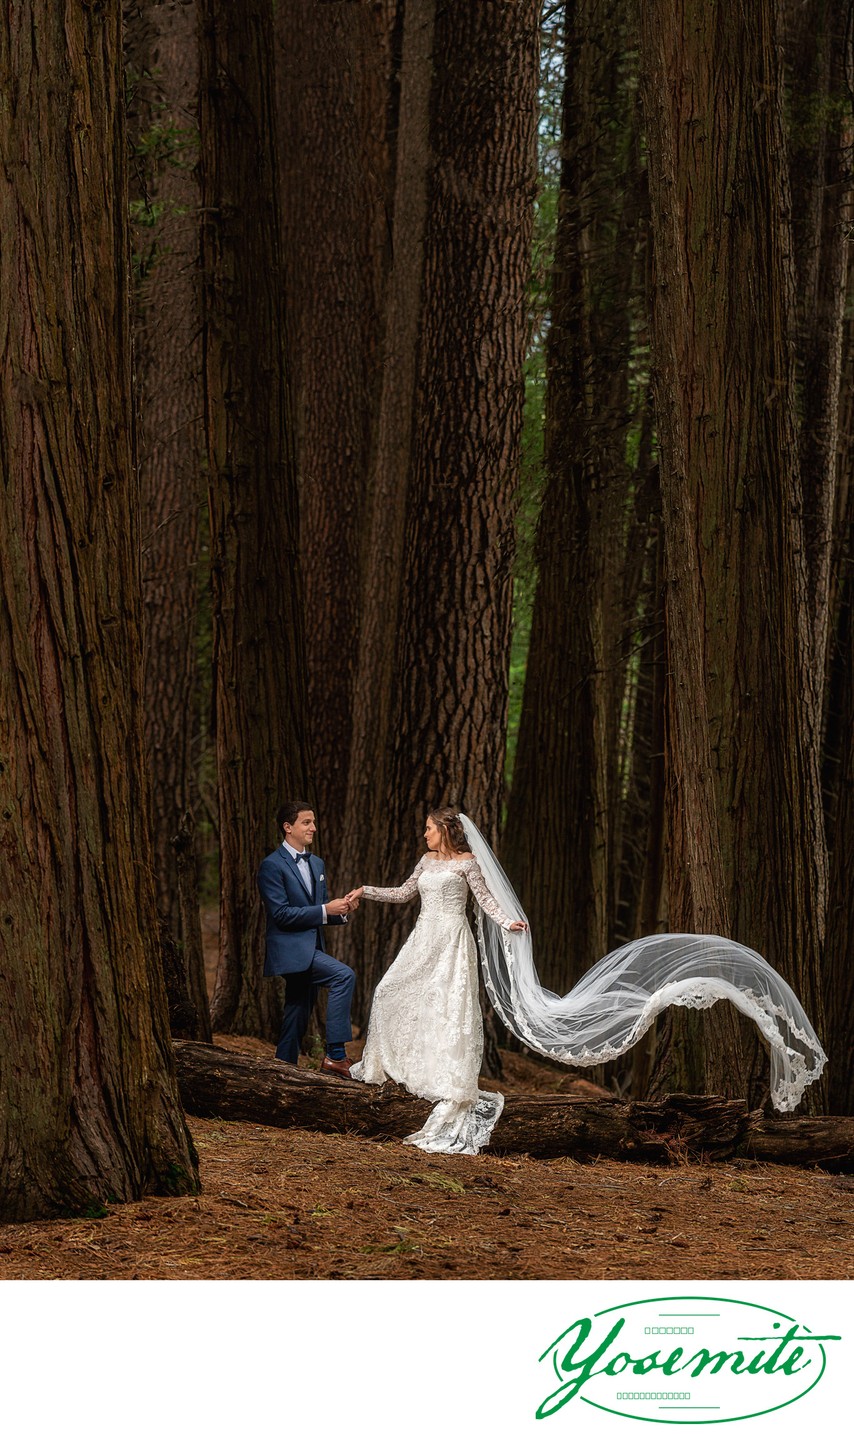 Yosemite Newlyweds Forest Wedding